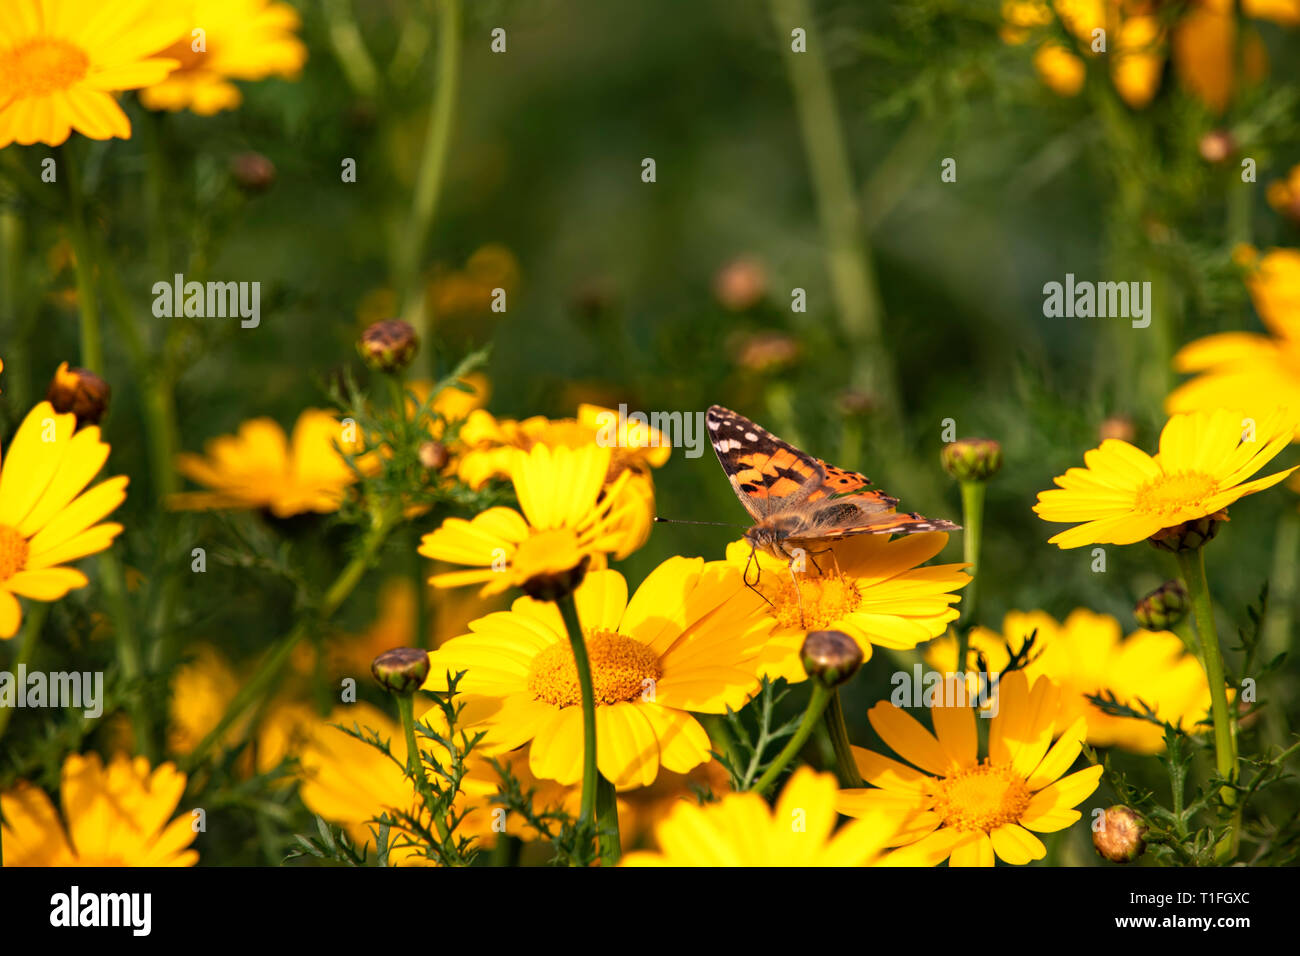 Schmetterling Vanessa cardui sitzen auf einer Blume Gelb wilde Chrysantheme während der Migration von Afrika nach Europa durch Israel Stockfoto